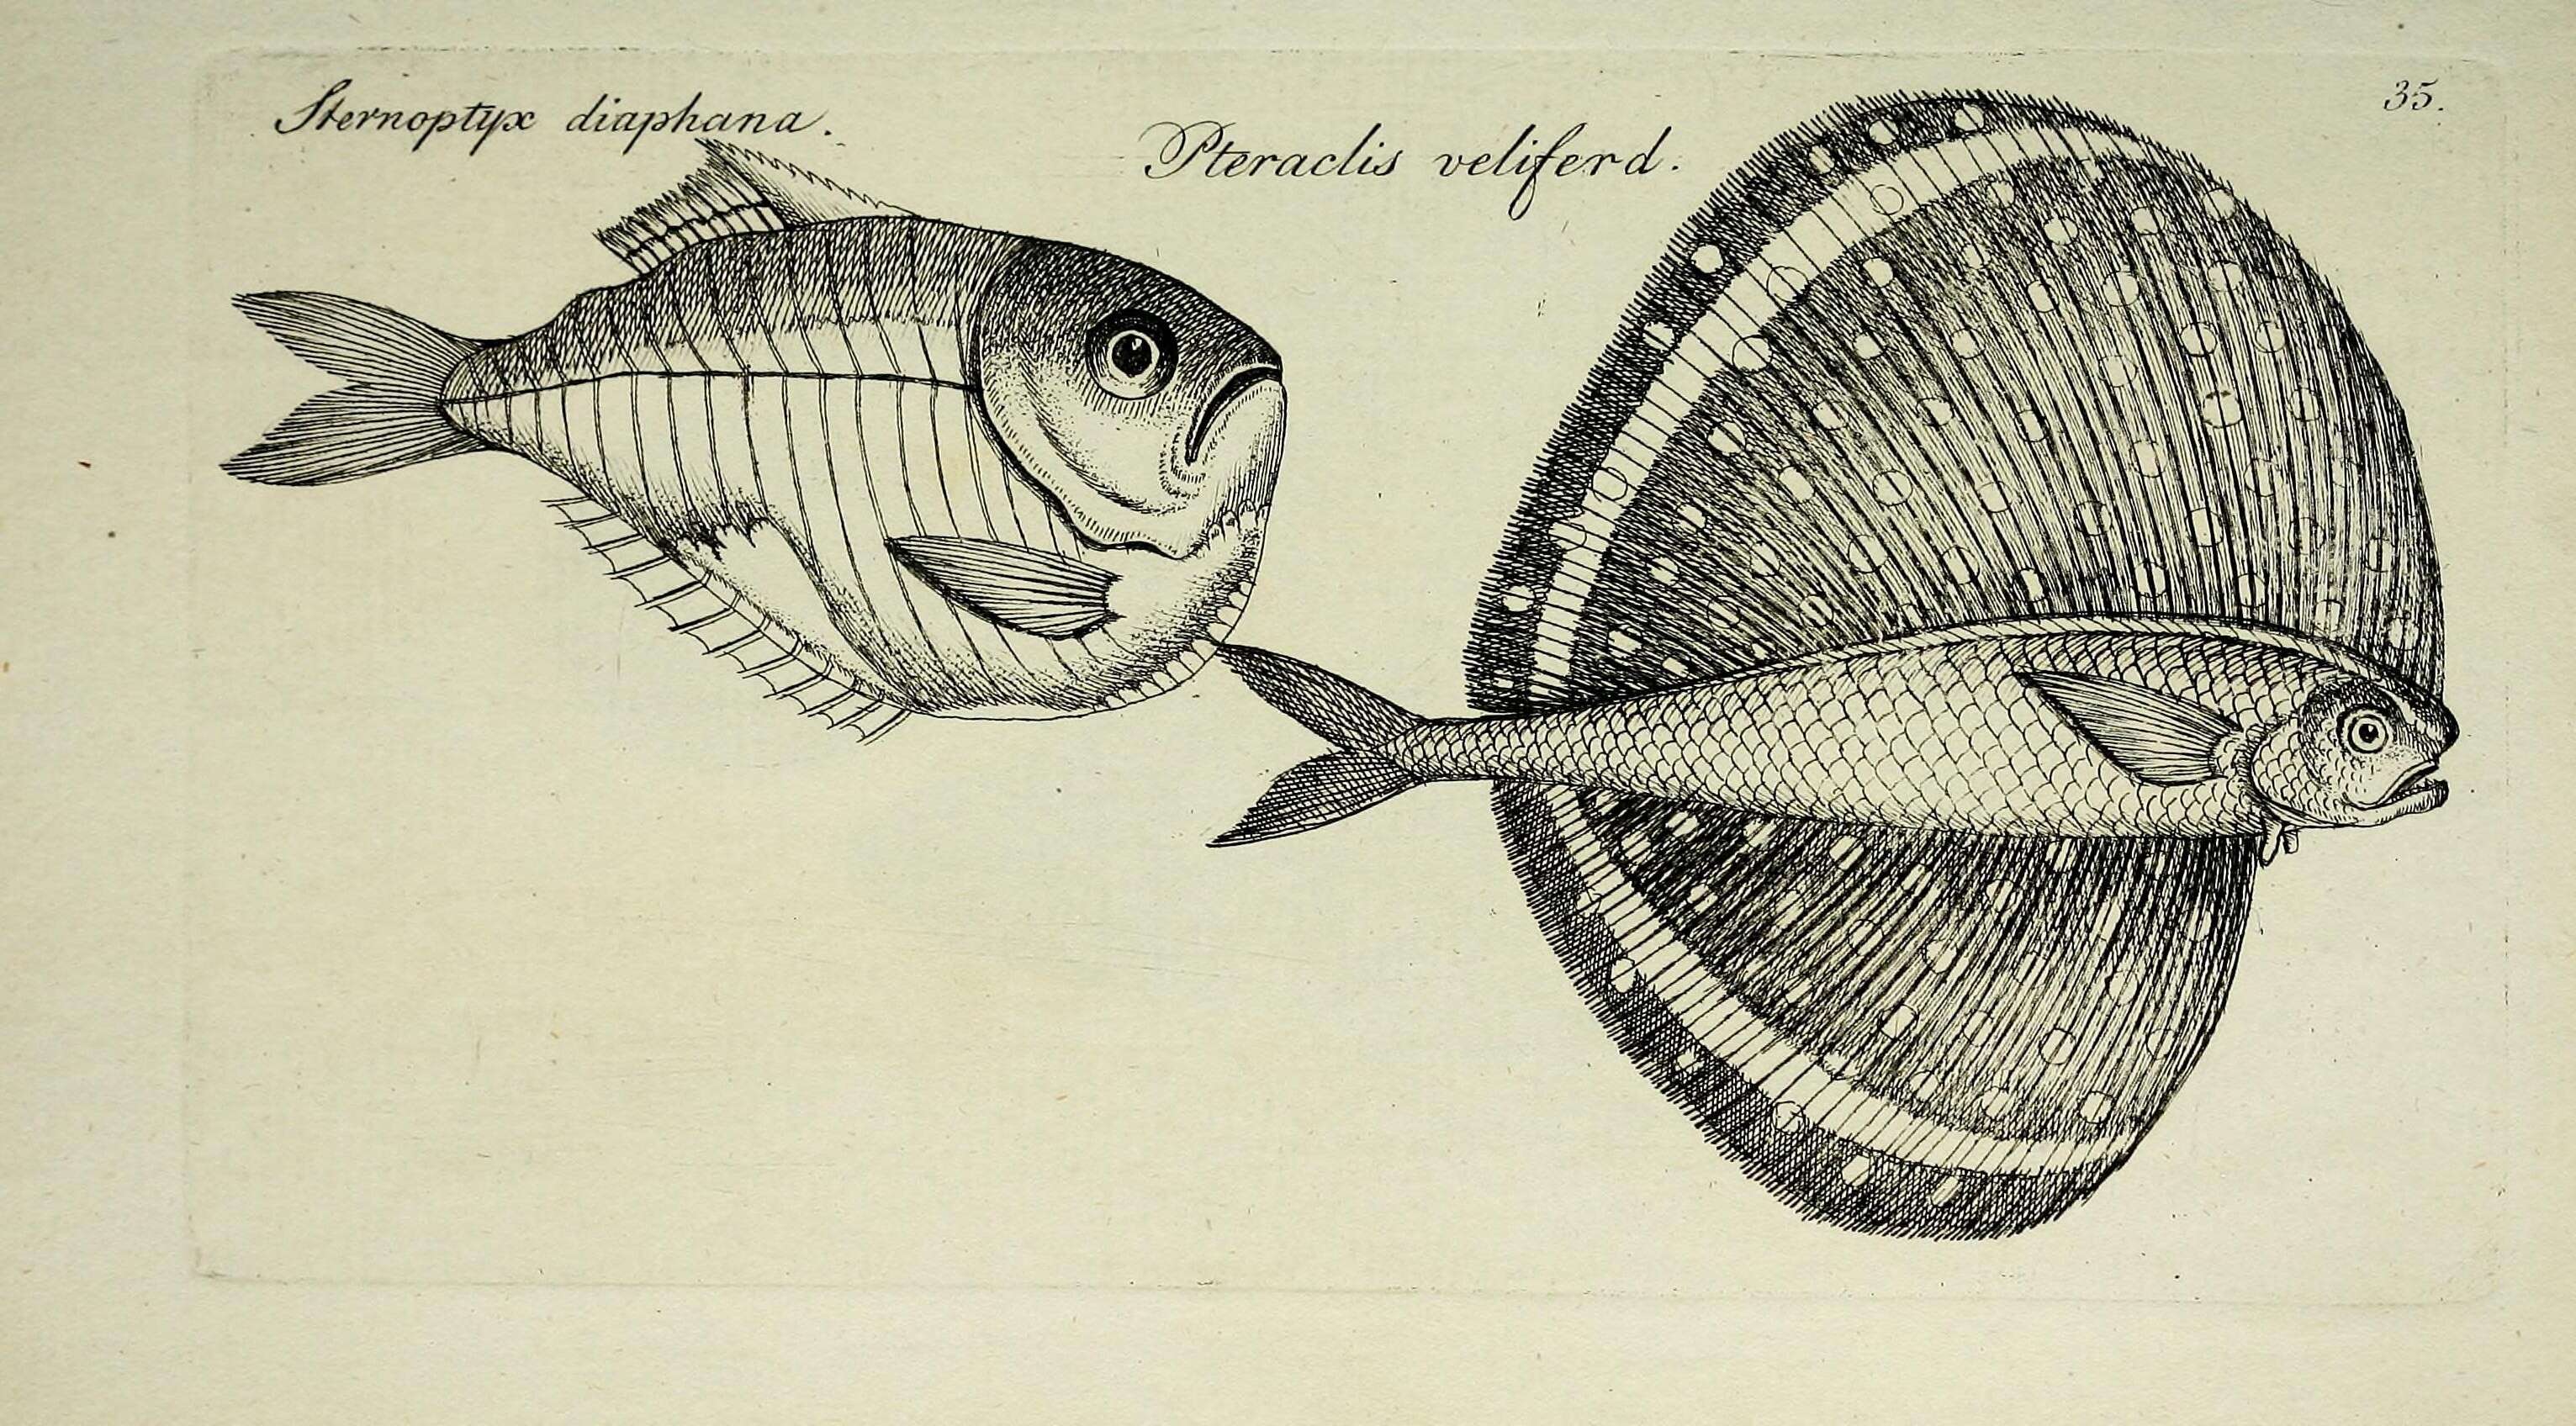 Image de Pteraclis velifera (Pallas 1770)